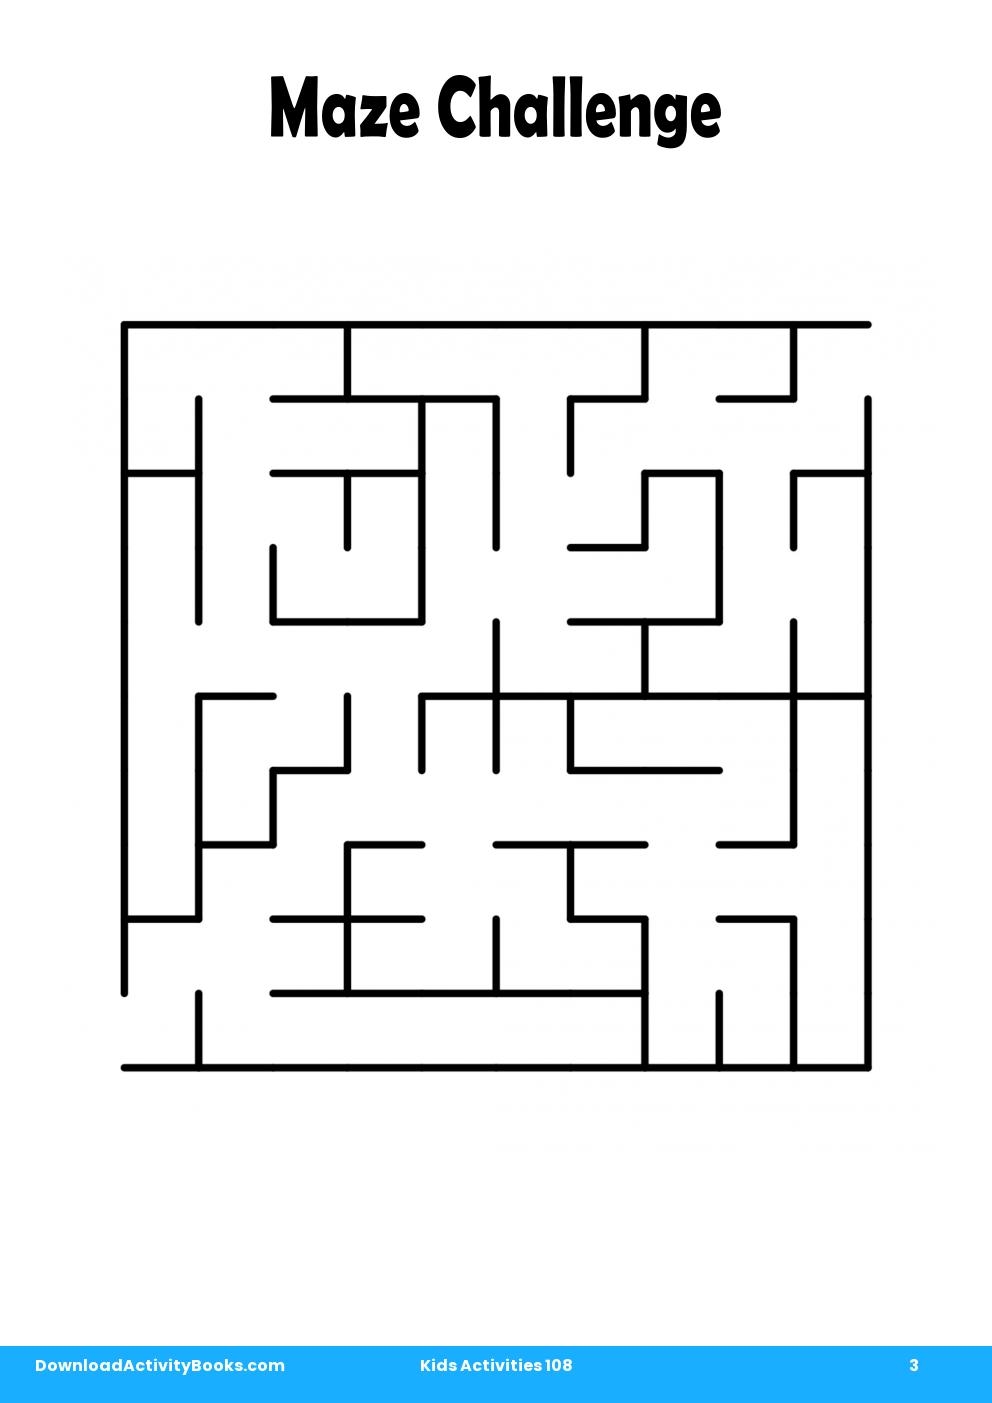 Maze Challenge in Kids Activities 108